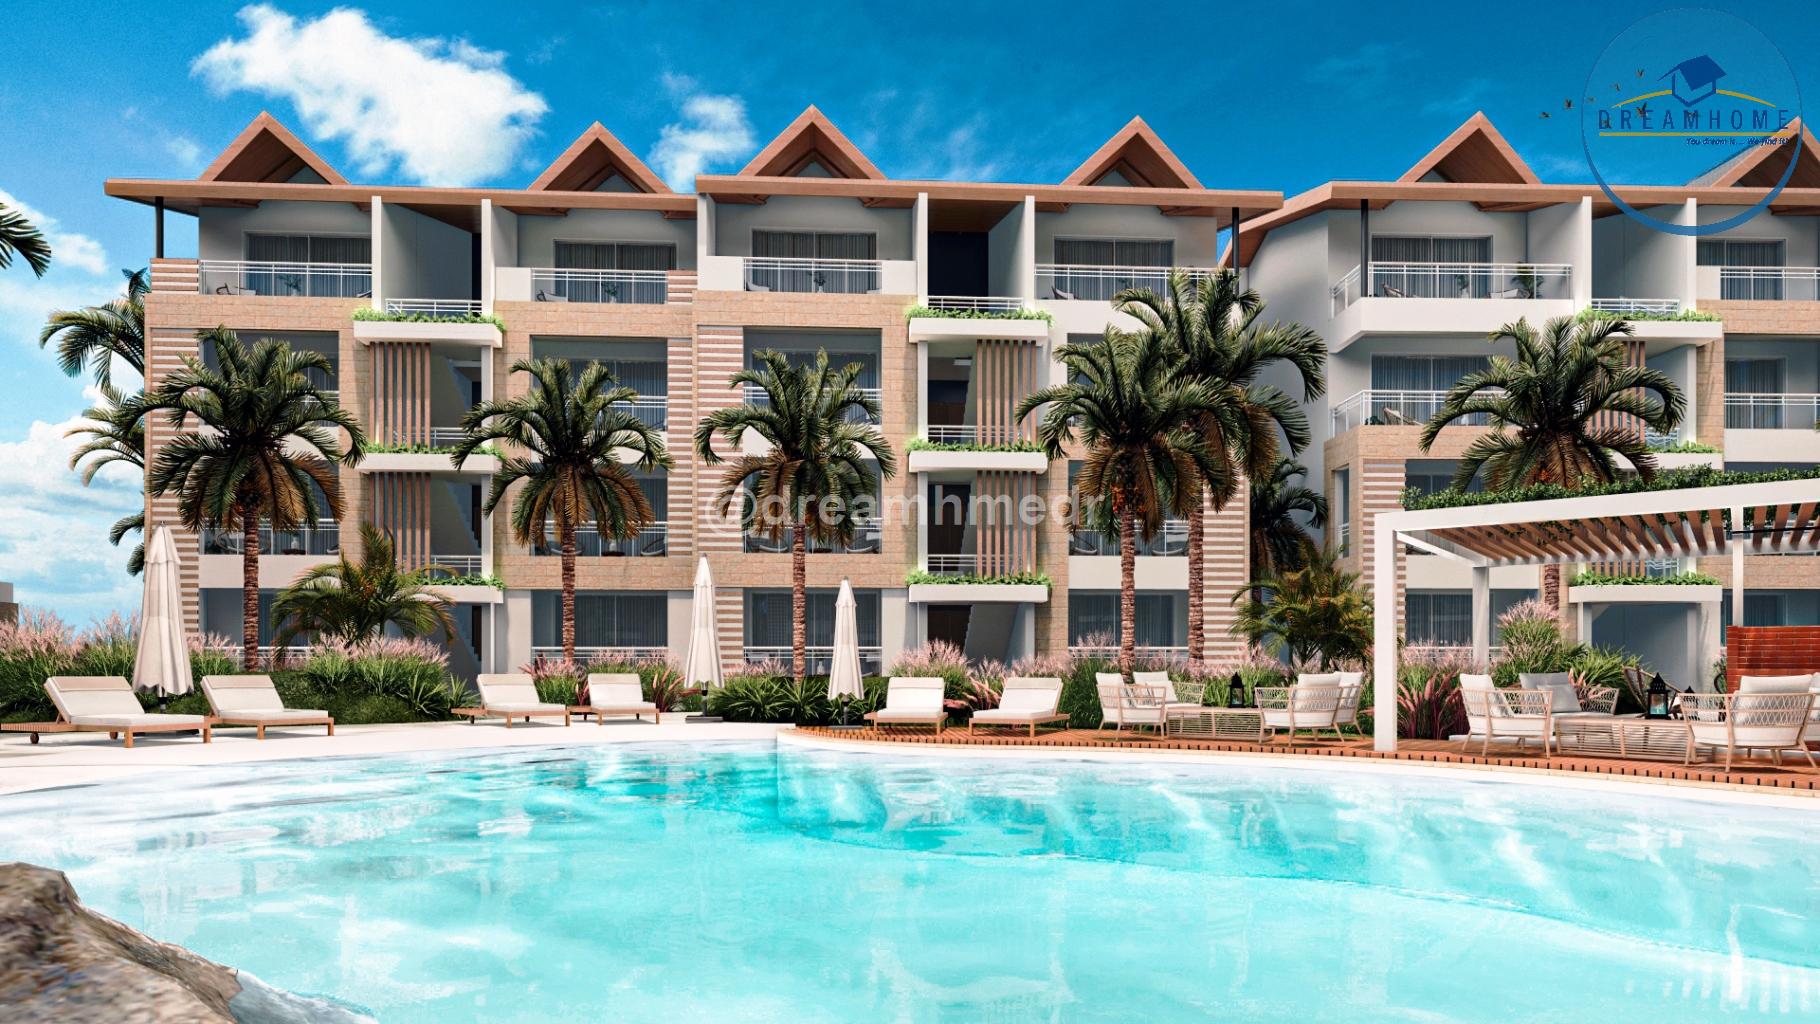 apartamentos - Exclusivos Apartamentos de Lujo en Venta en Bayahibe, Dominicus ID 3336 7